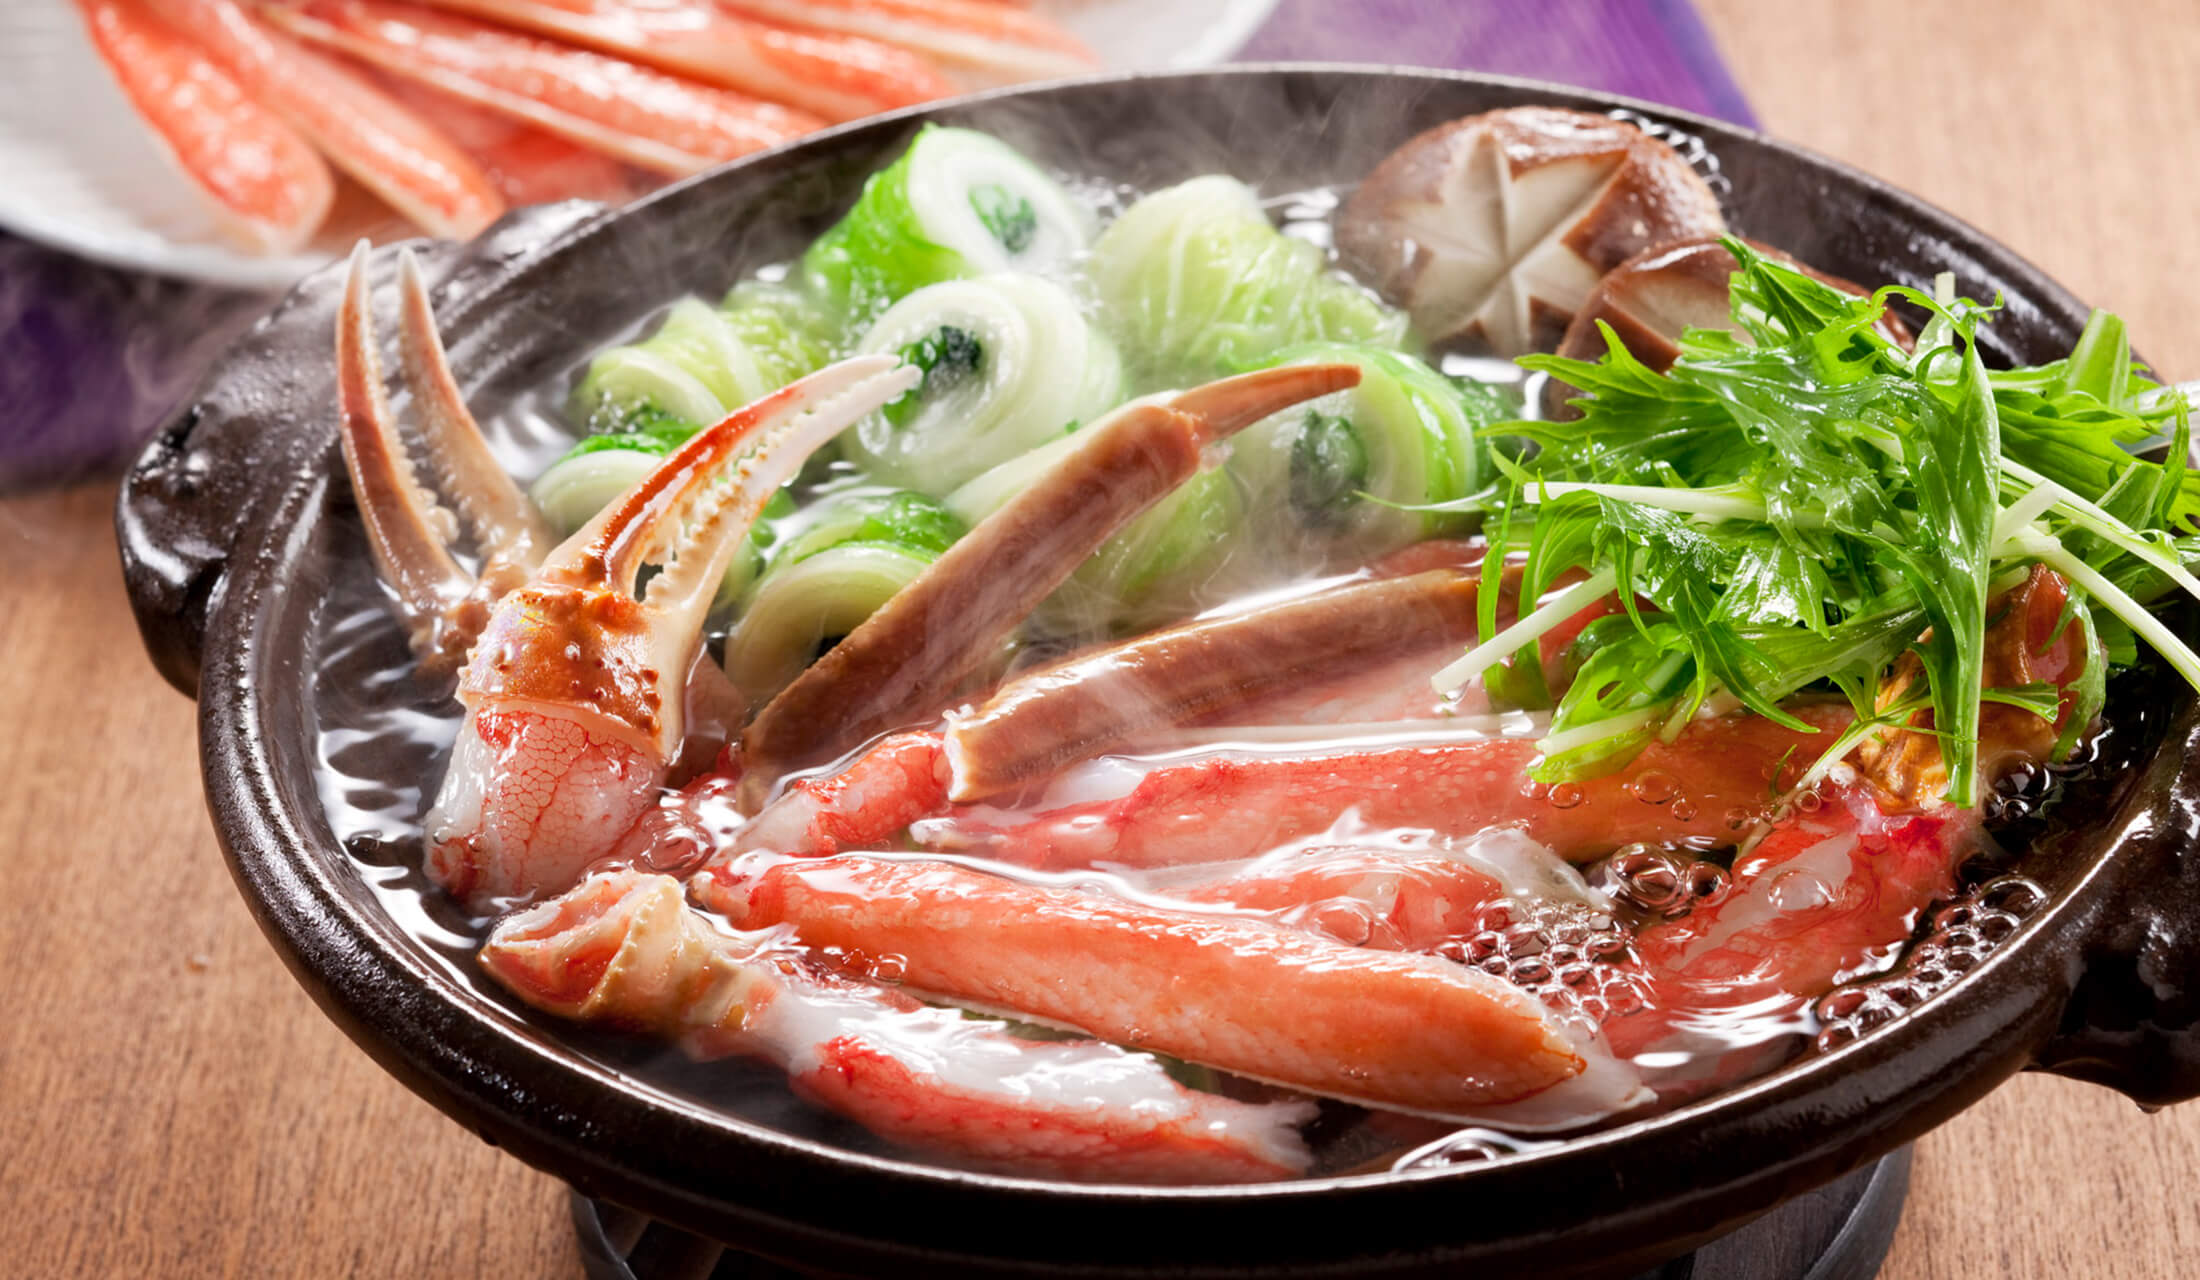 あつあつの「カニ鍋」をさらに最高においしく食べる方法 | Precious.jp（プレシャス）